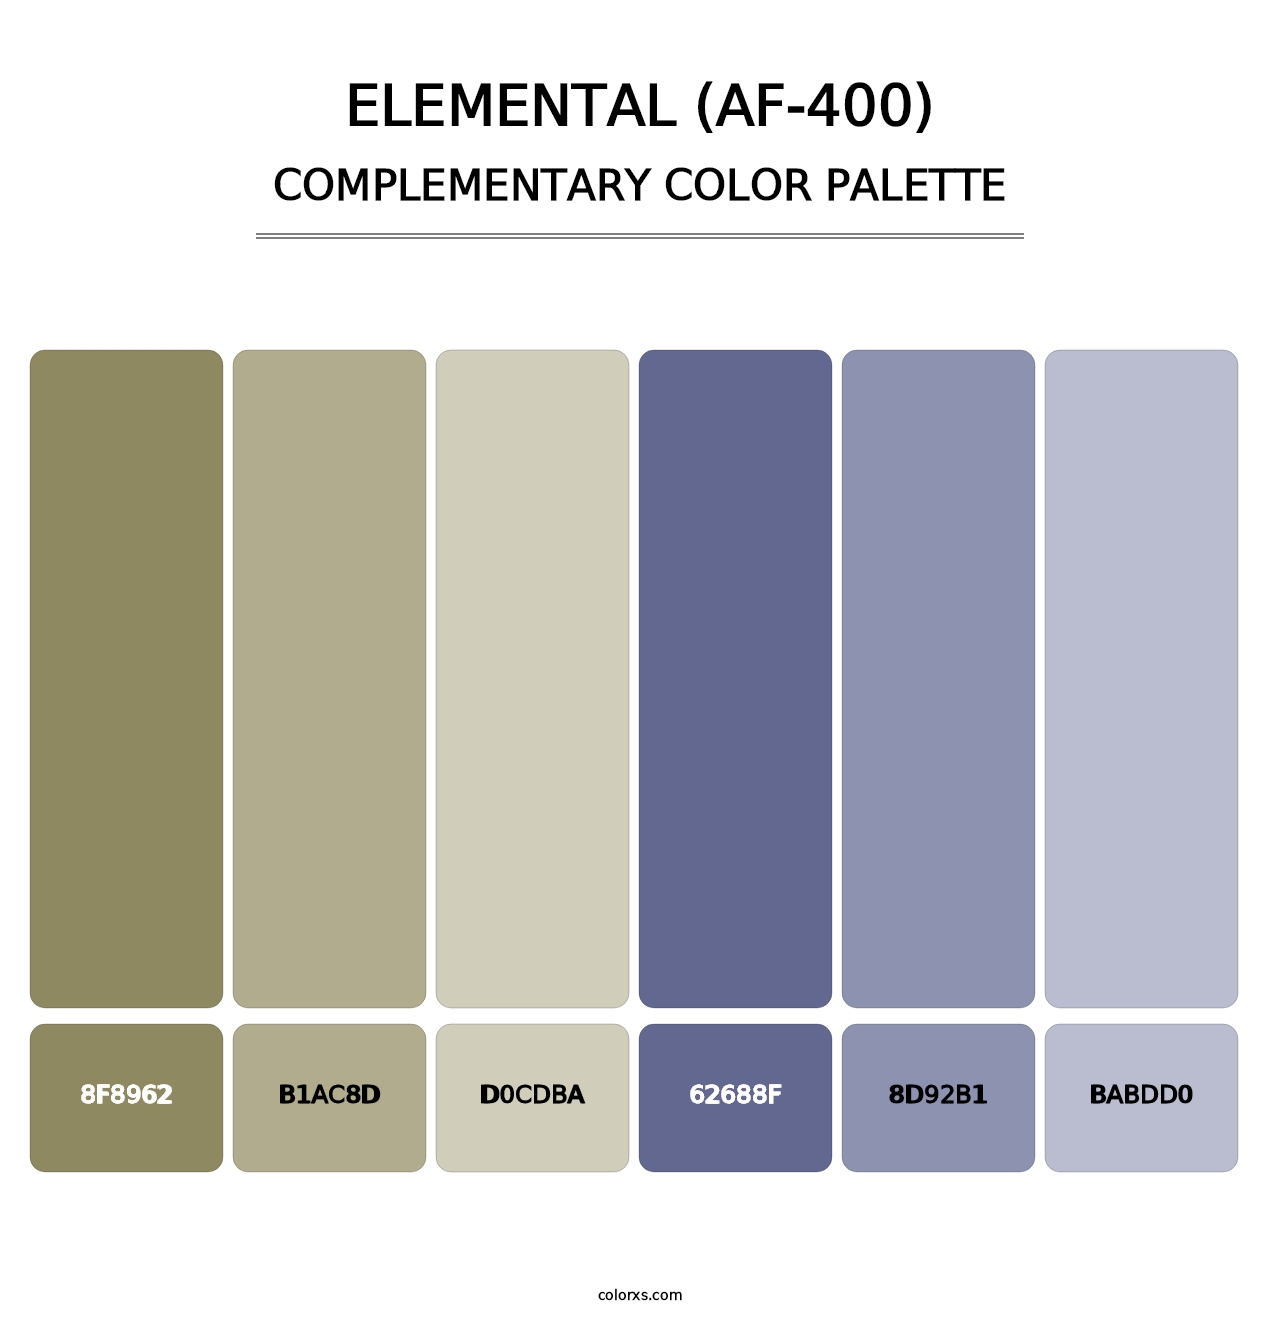 Elemental (AF-400) - Complementary Color Palette